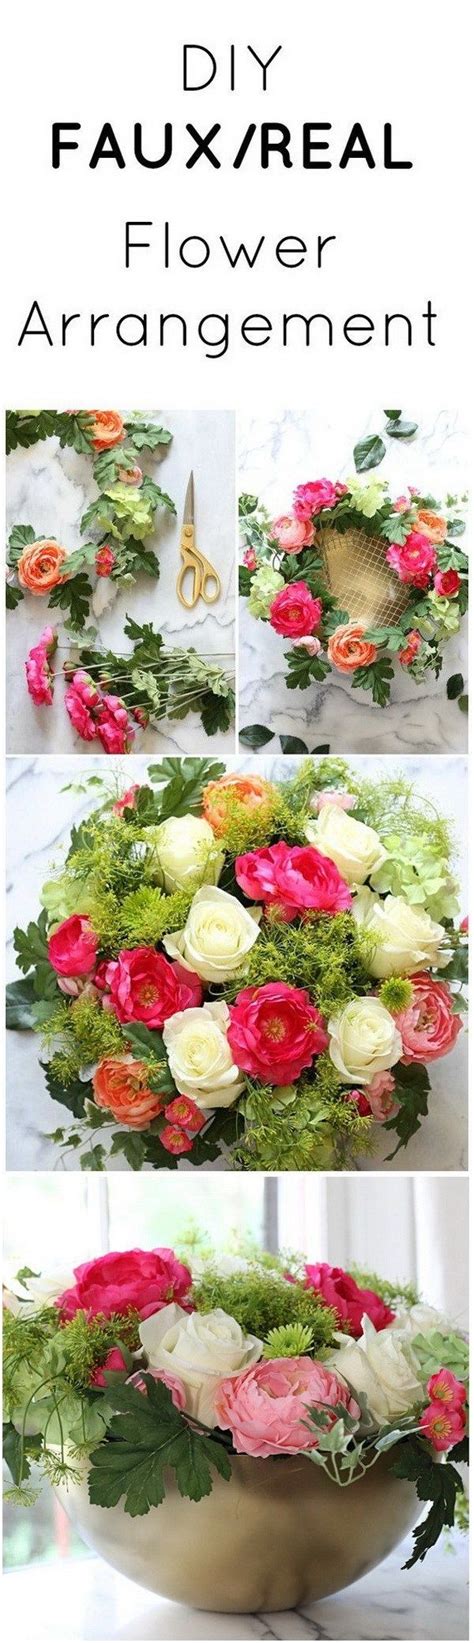 eye catching flower arrangements arrange flowers like a pro faux flower arrangements fake